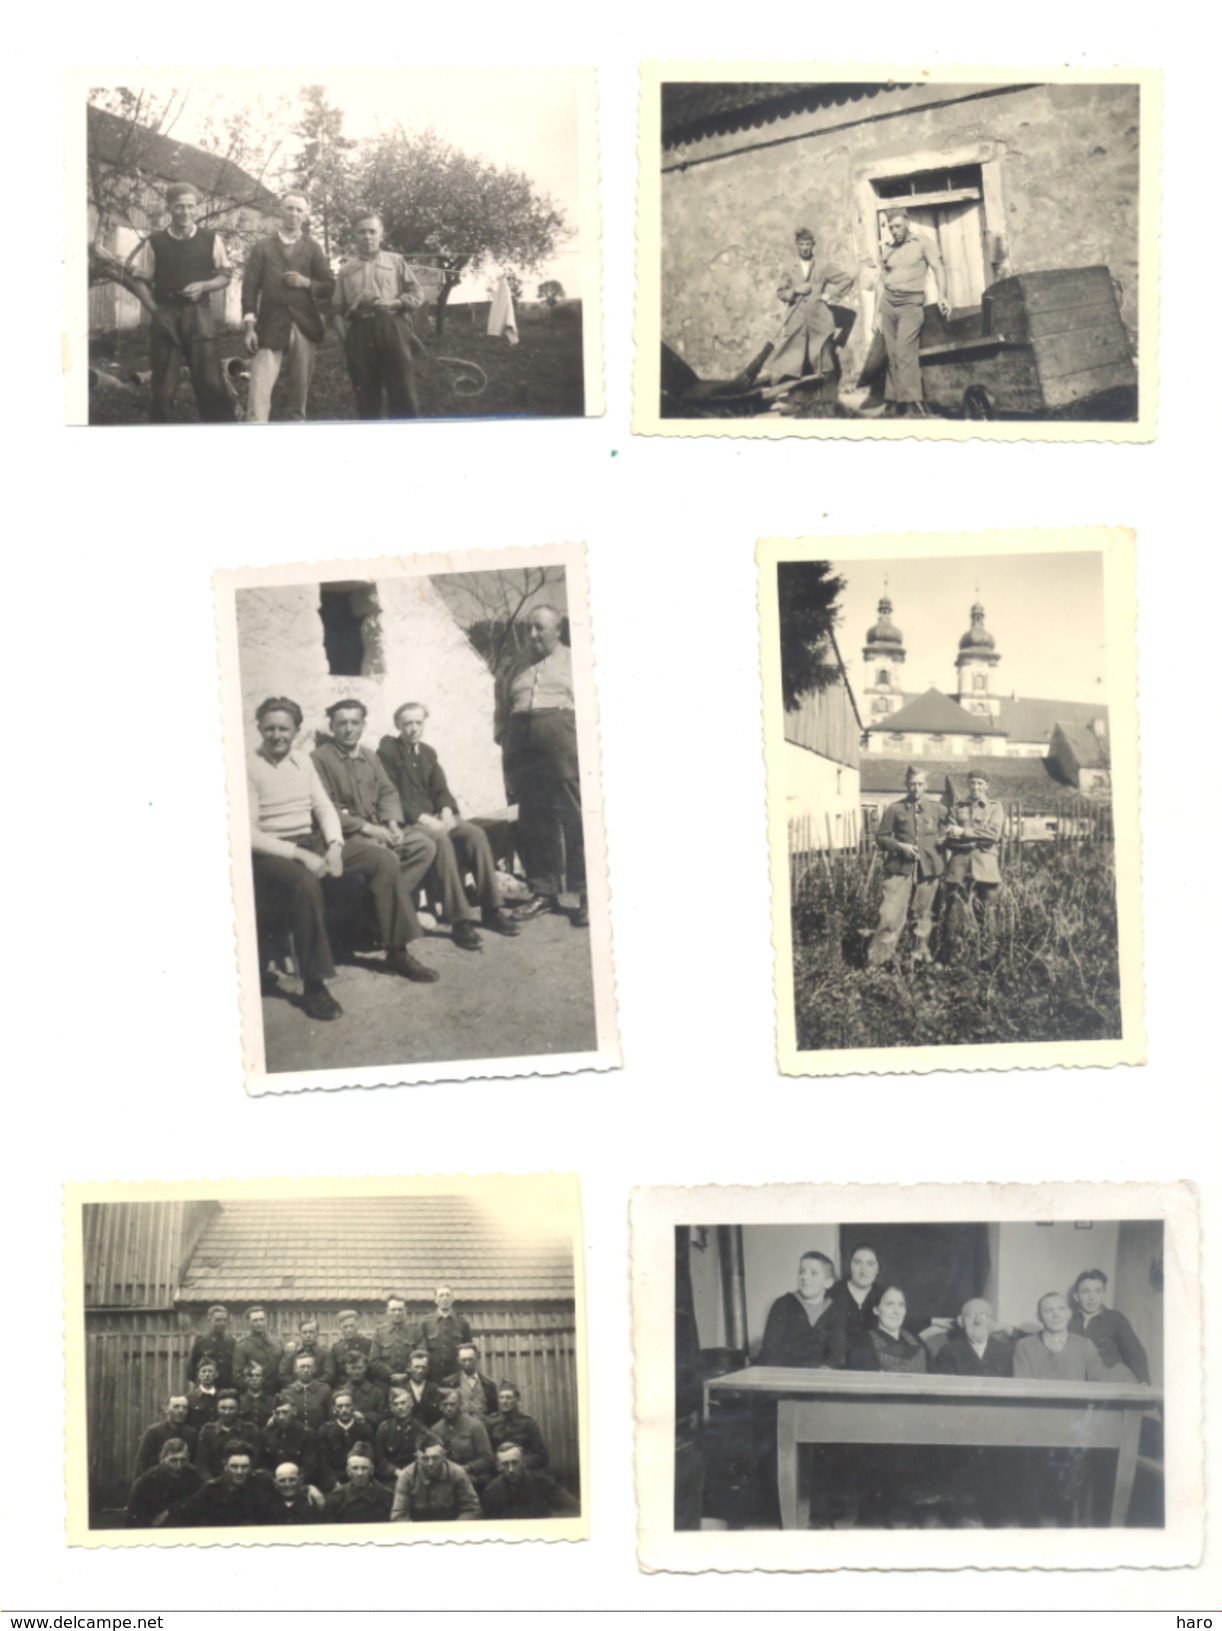 Armée Belge - Guerre 40/45 - Lot de 48 photos - Souvenir d'un prisonniers (M; Dethioux de Les Avins) 1940 à 1942  b211